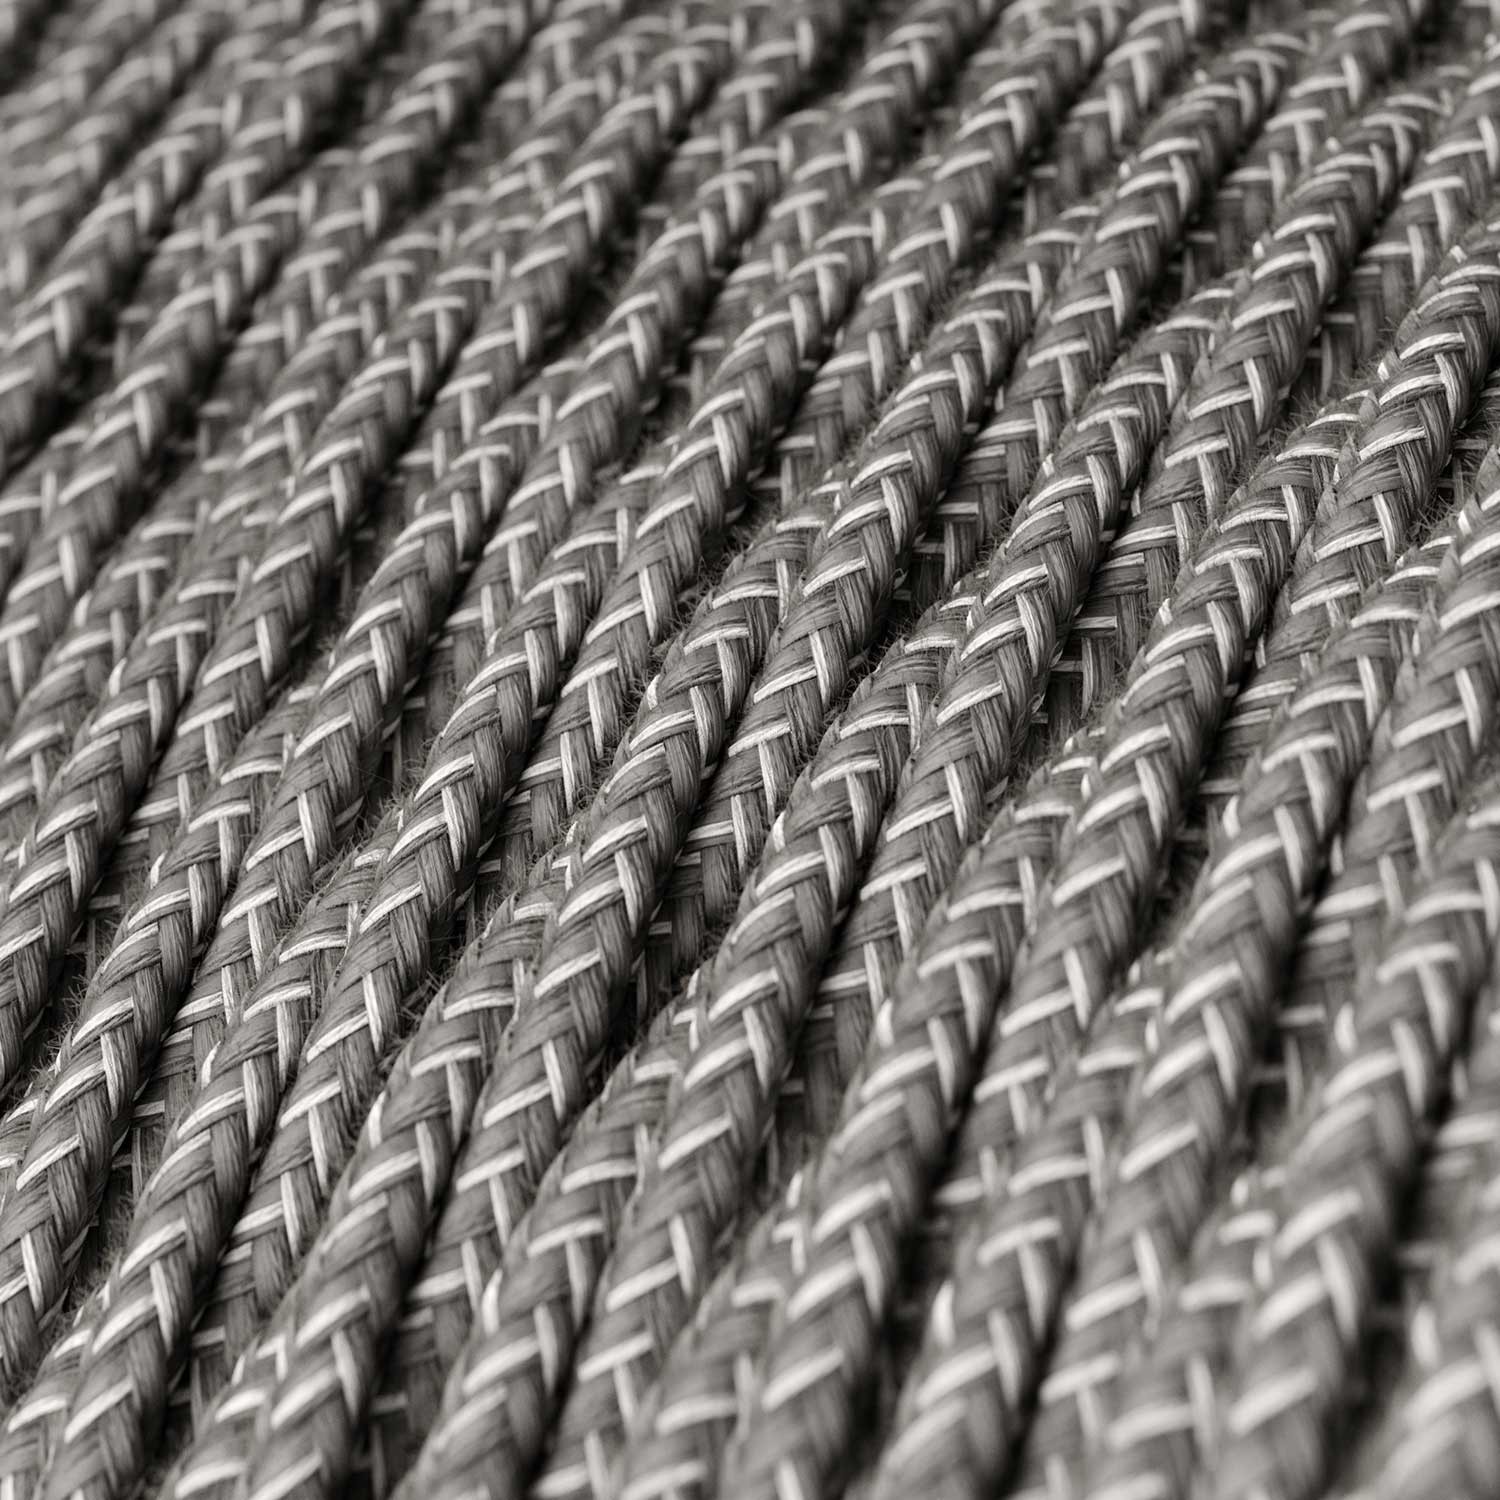 Splétaný lněný textilní elektrický kabel TN02 přírodní šedé barvy